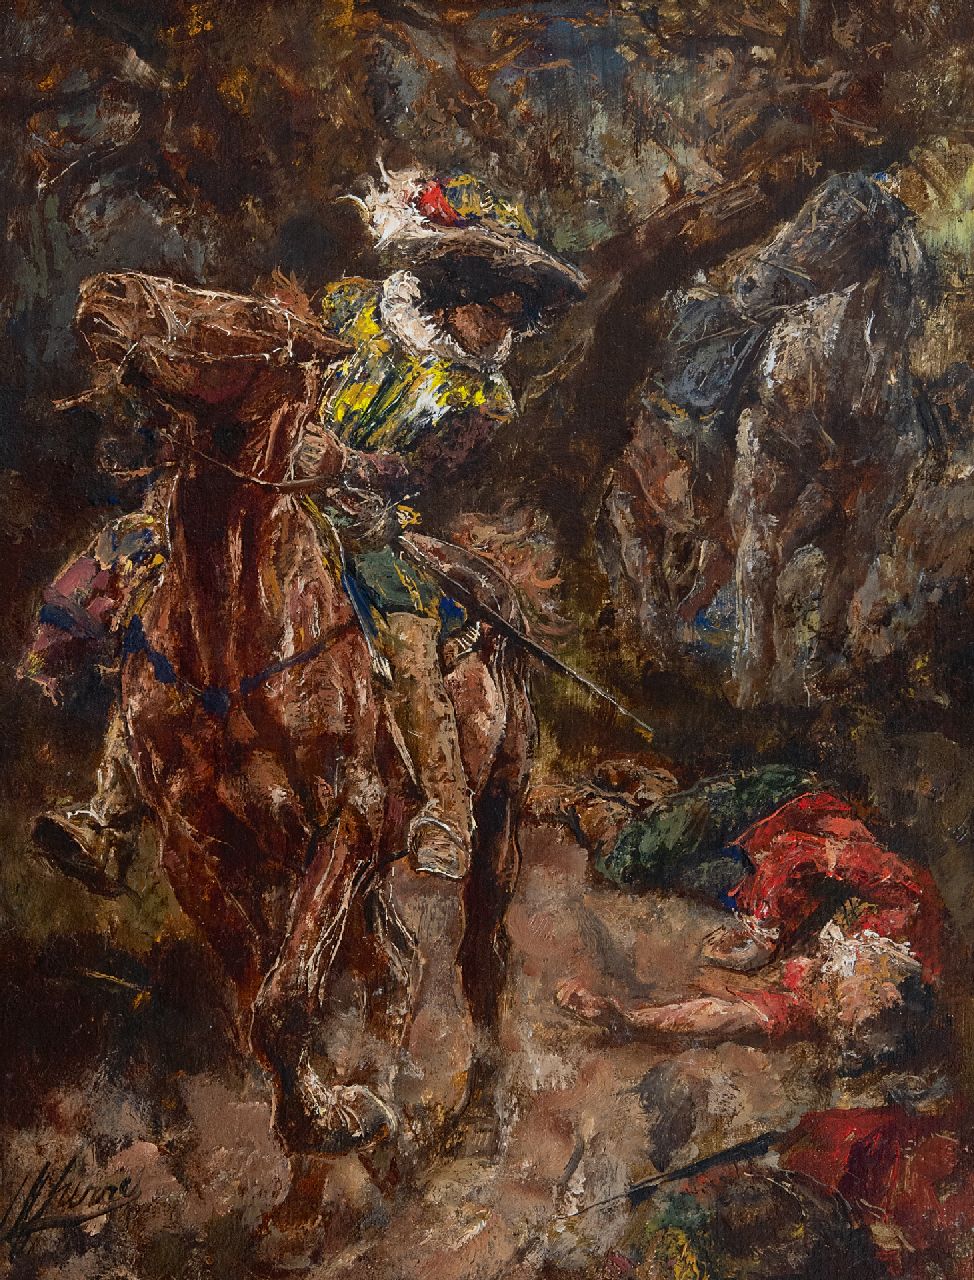 Jurres J.H.  | Johannes Hendricus Jurres, Scène uit Gil Blas, olieverf op paneel 28,4 x 22,0 cm, gesigneerd linksonder